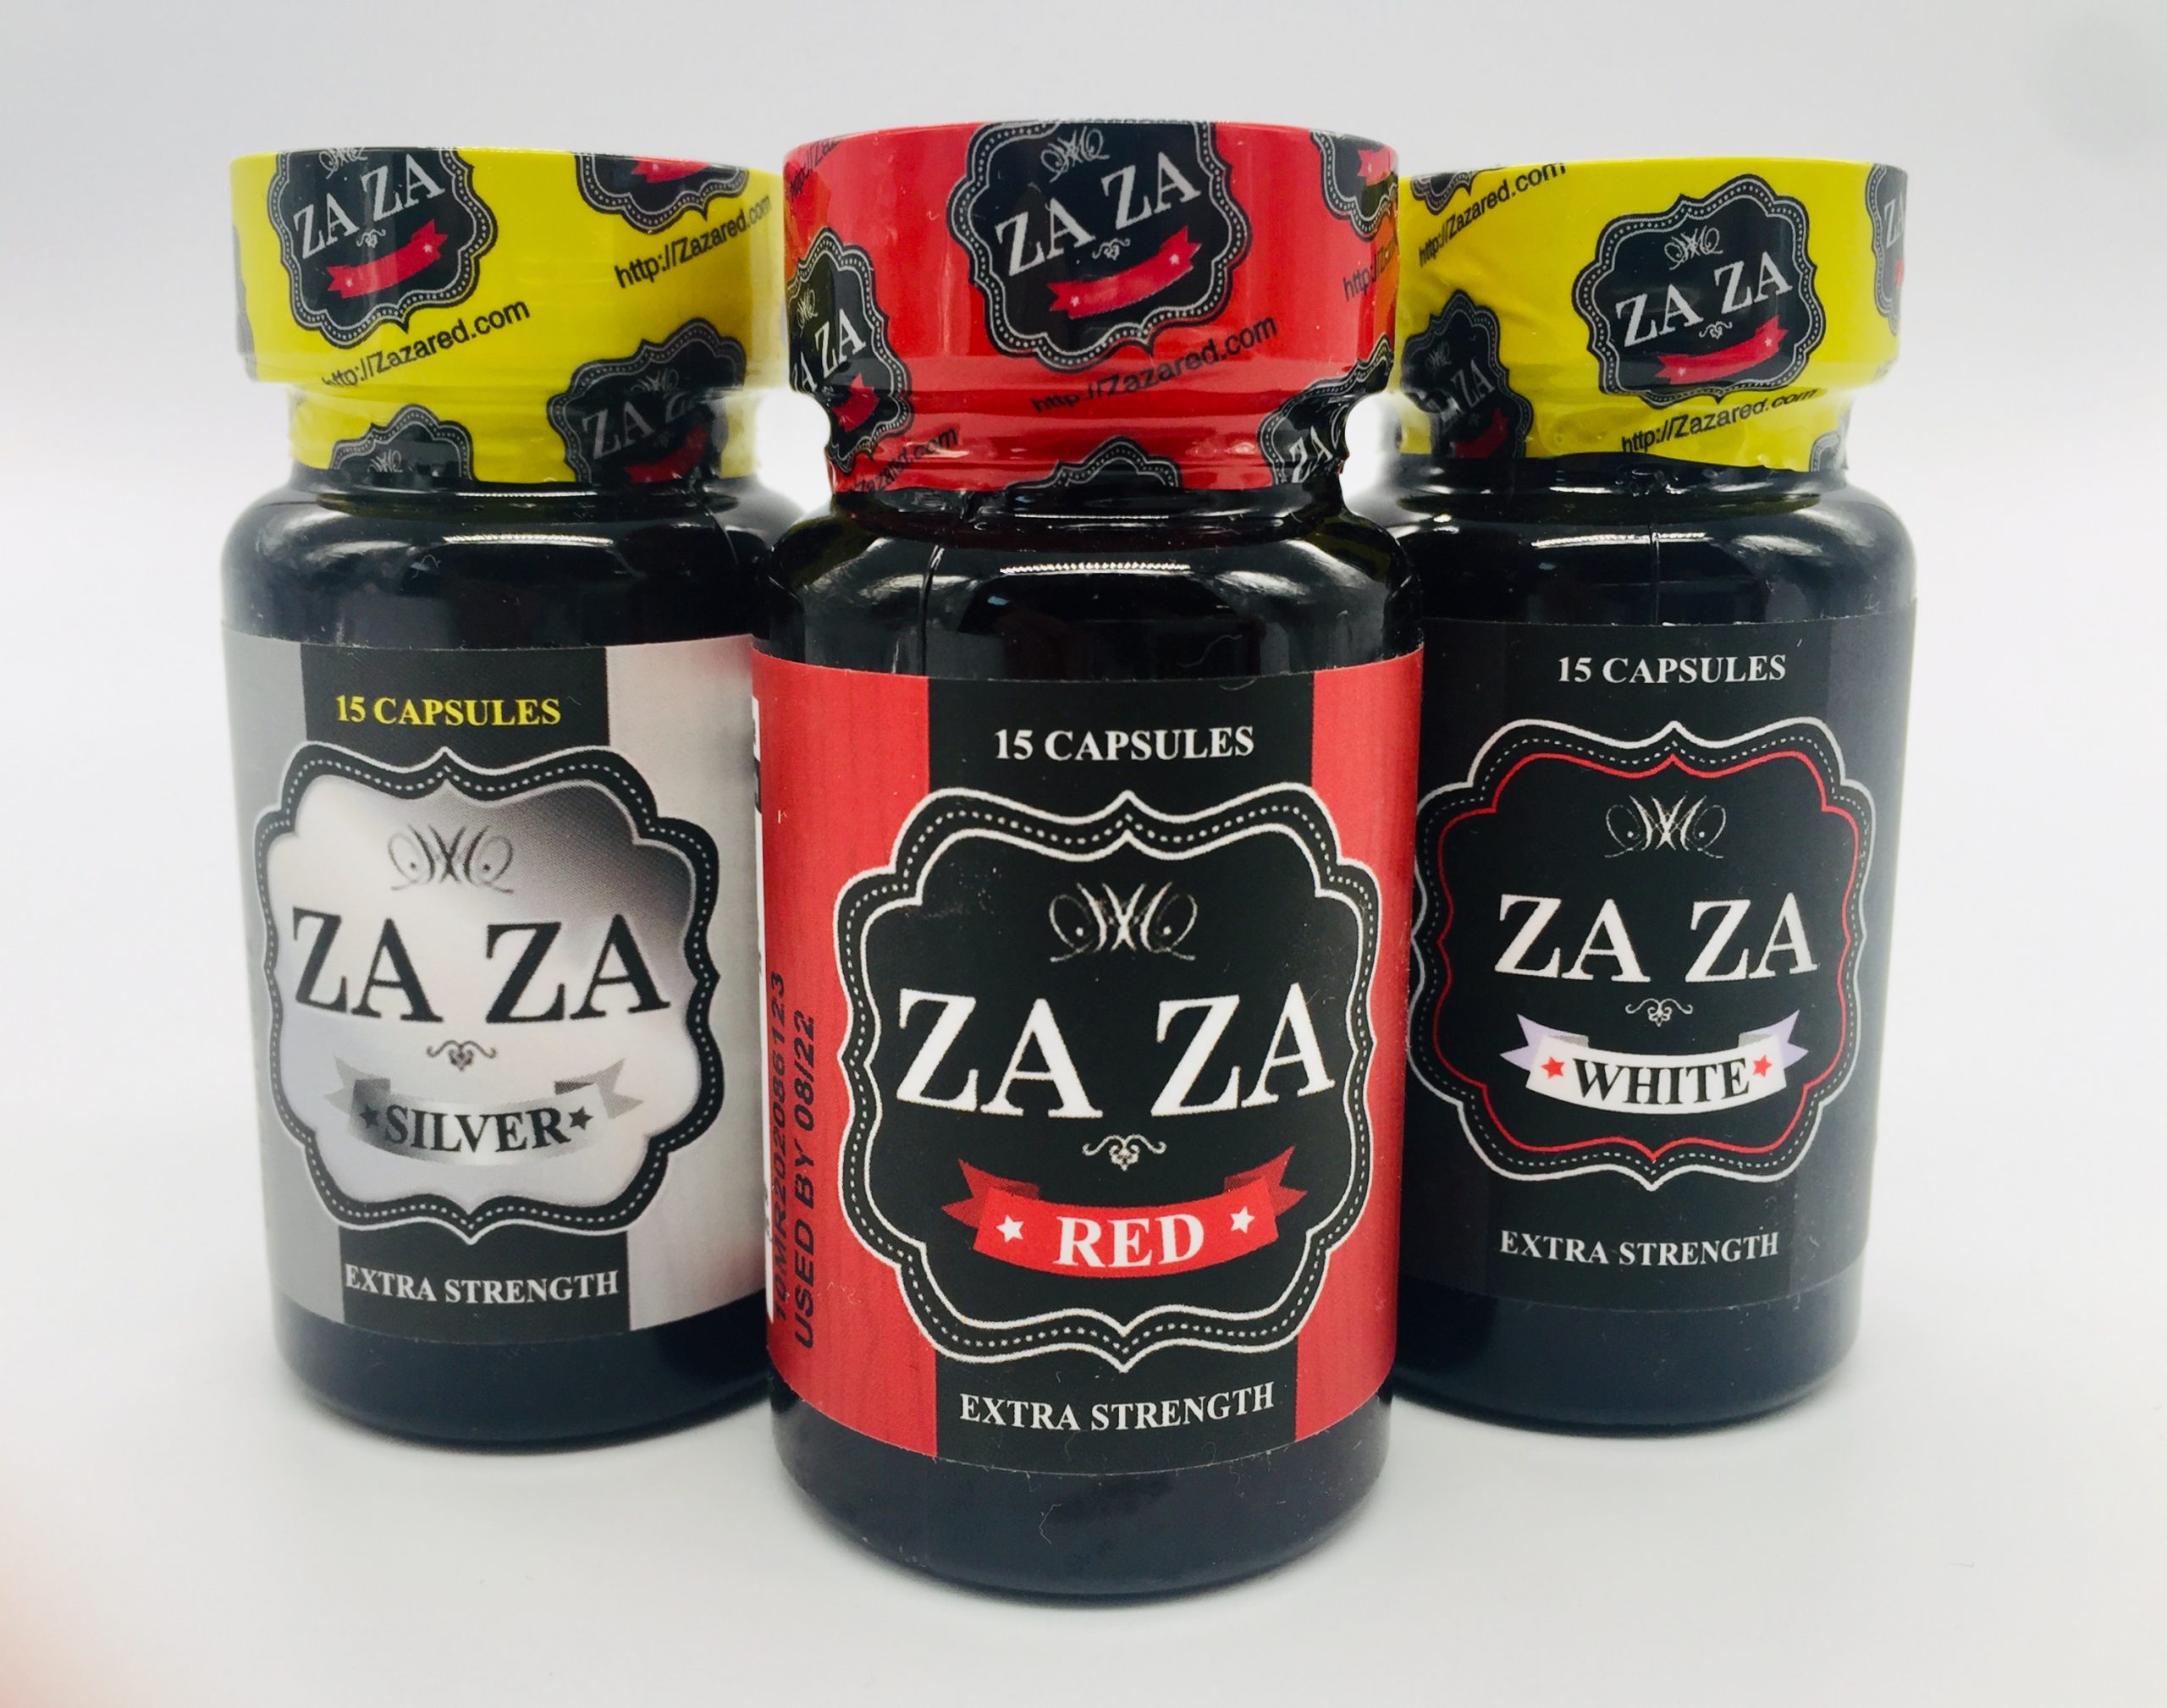 ZaZa White - 15 Capsules Per Bottle